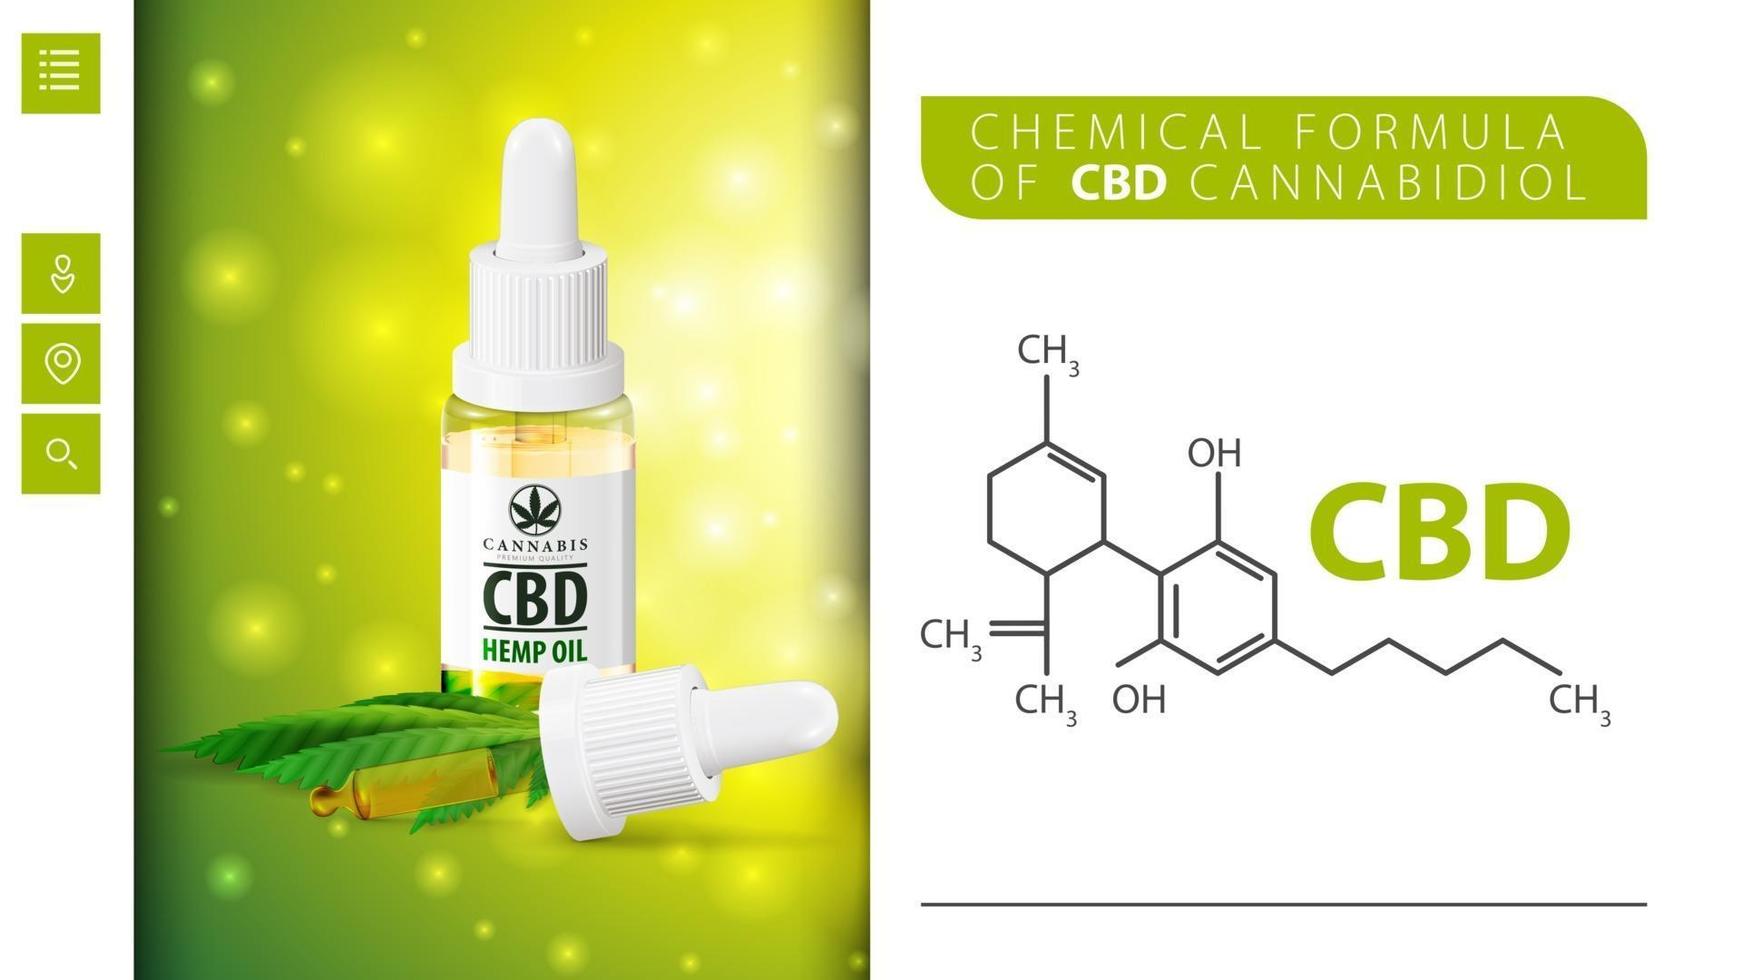 fórmula química de cbd cannabidiol y botella de aceite de cbd con pipeta. cartel blanco y verde para el sitio web vector